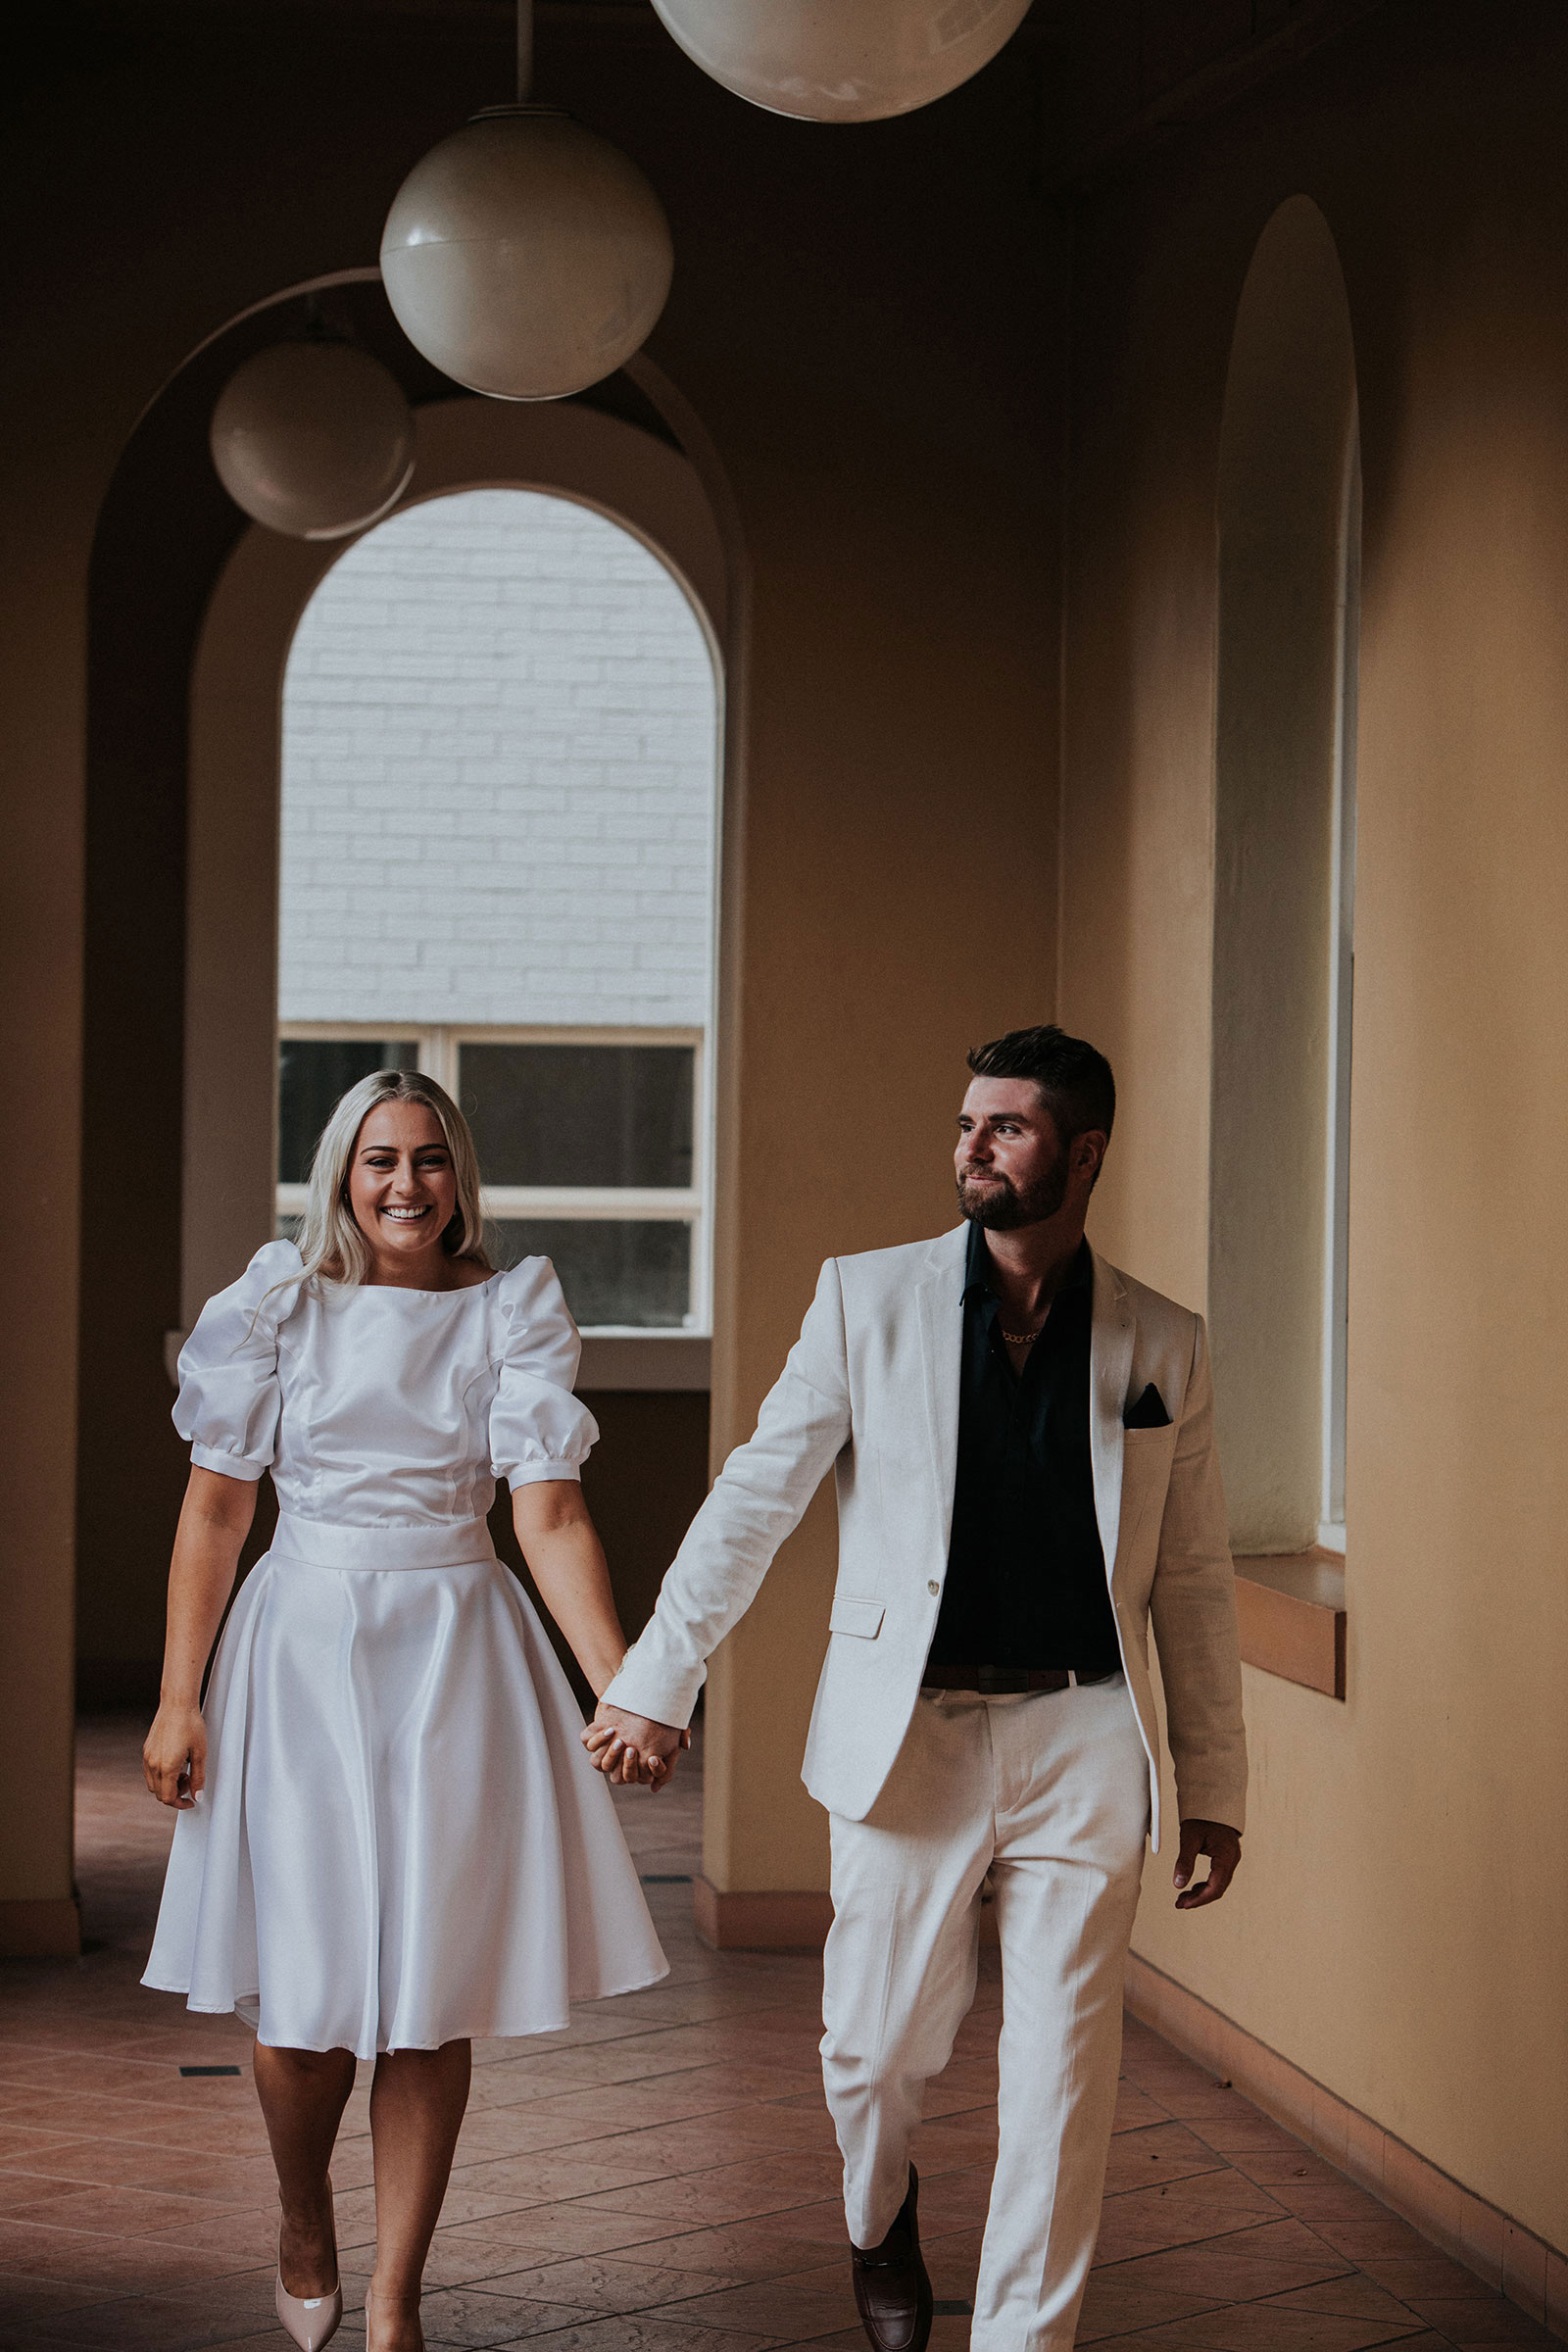 Brisbane-Registry-wedding-Photography-Neil-Hole-Photography